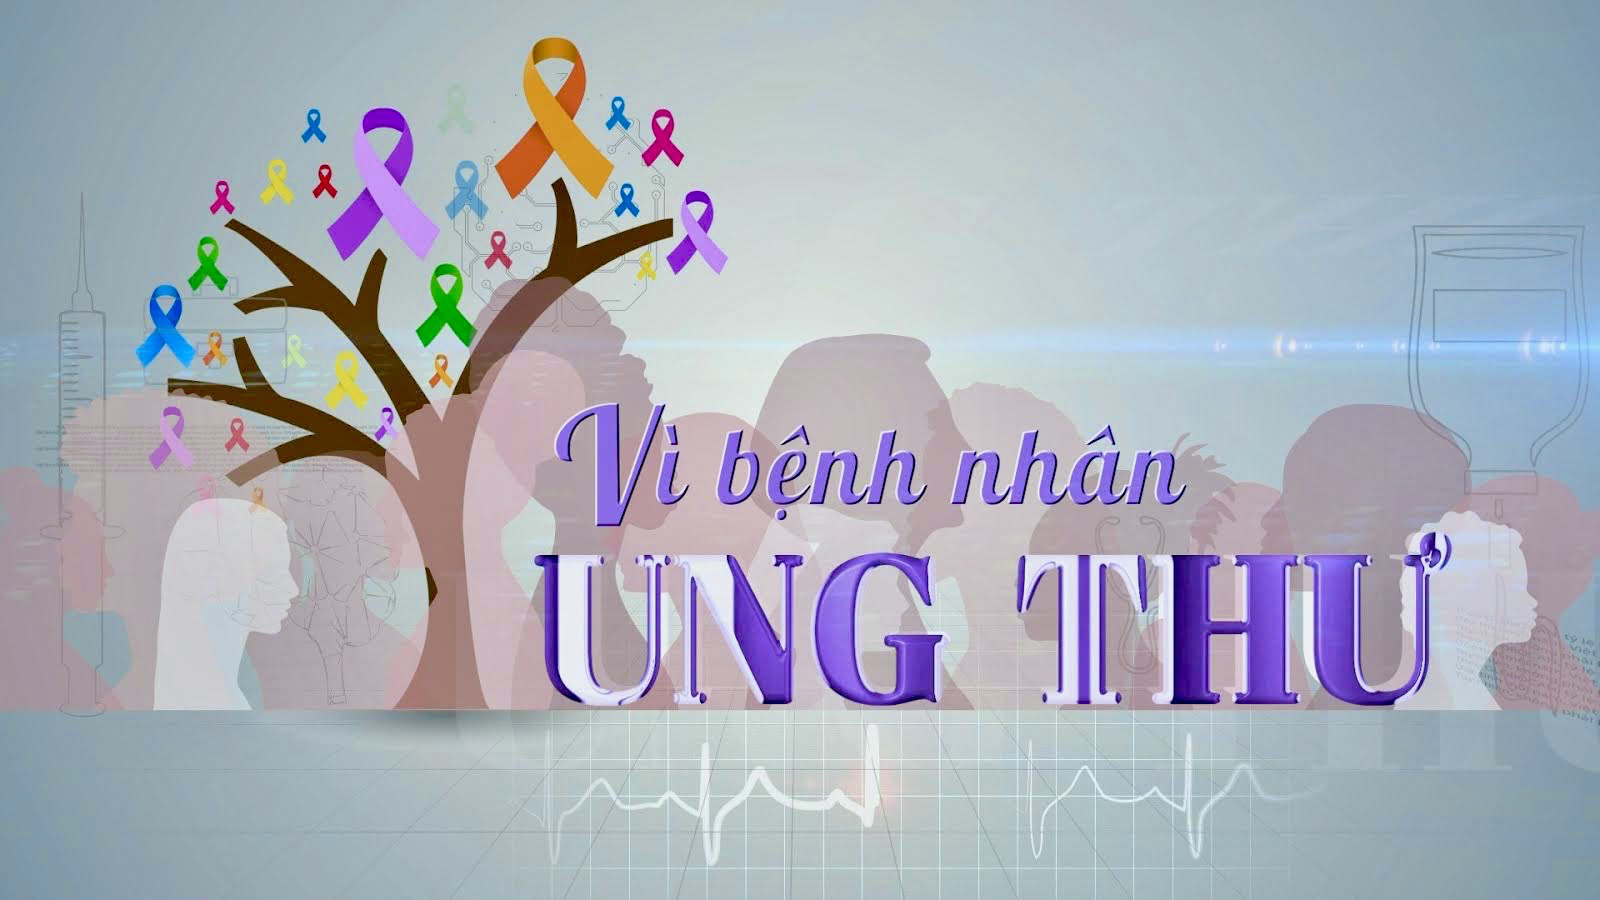 "Vì bệnh nhân ung thư" - Chương trình truyền hình chuyên biệt về bệnh ung thư đầu tiên trên VTV1